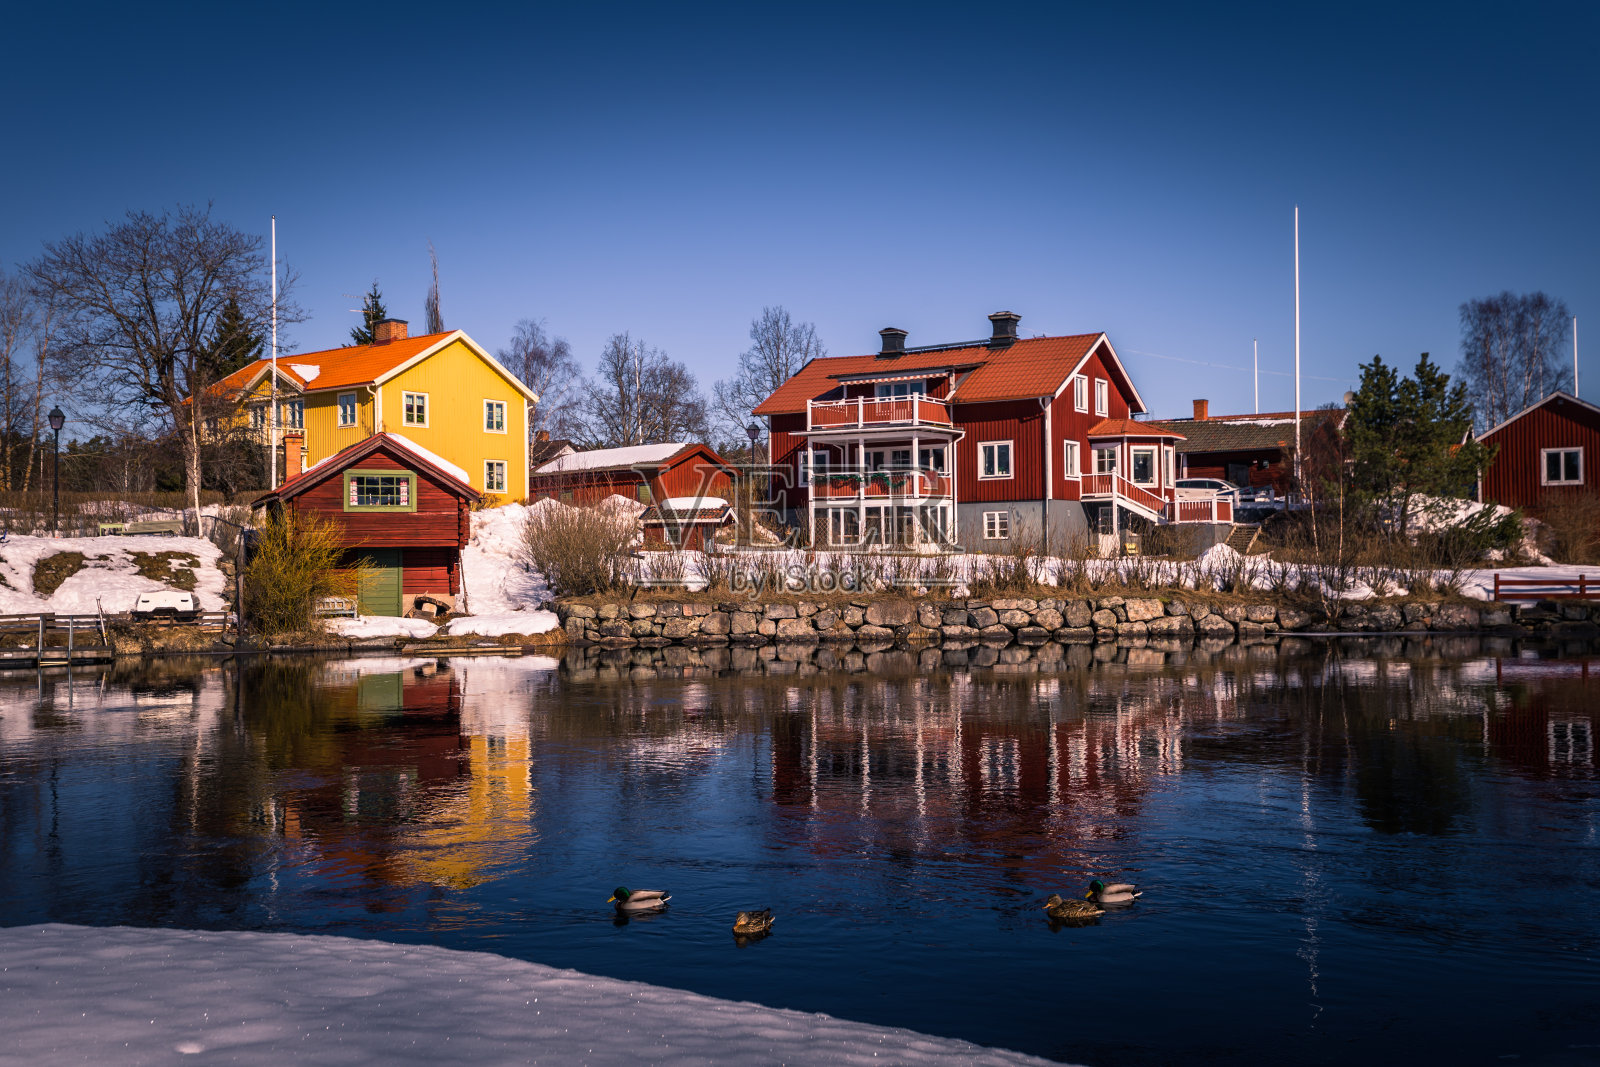 Sundborn - 2018年3月30日:瑞典达拉那风景如画的Sundborn小镇全景图照片摄影图片